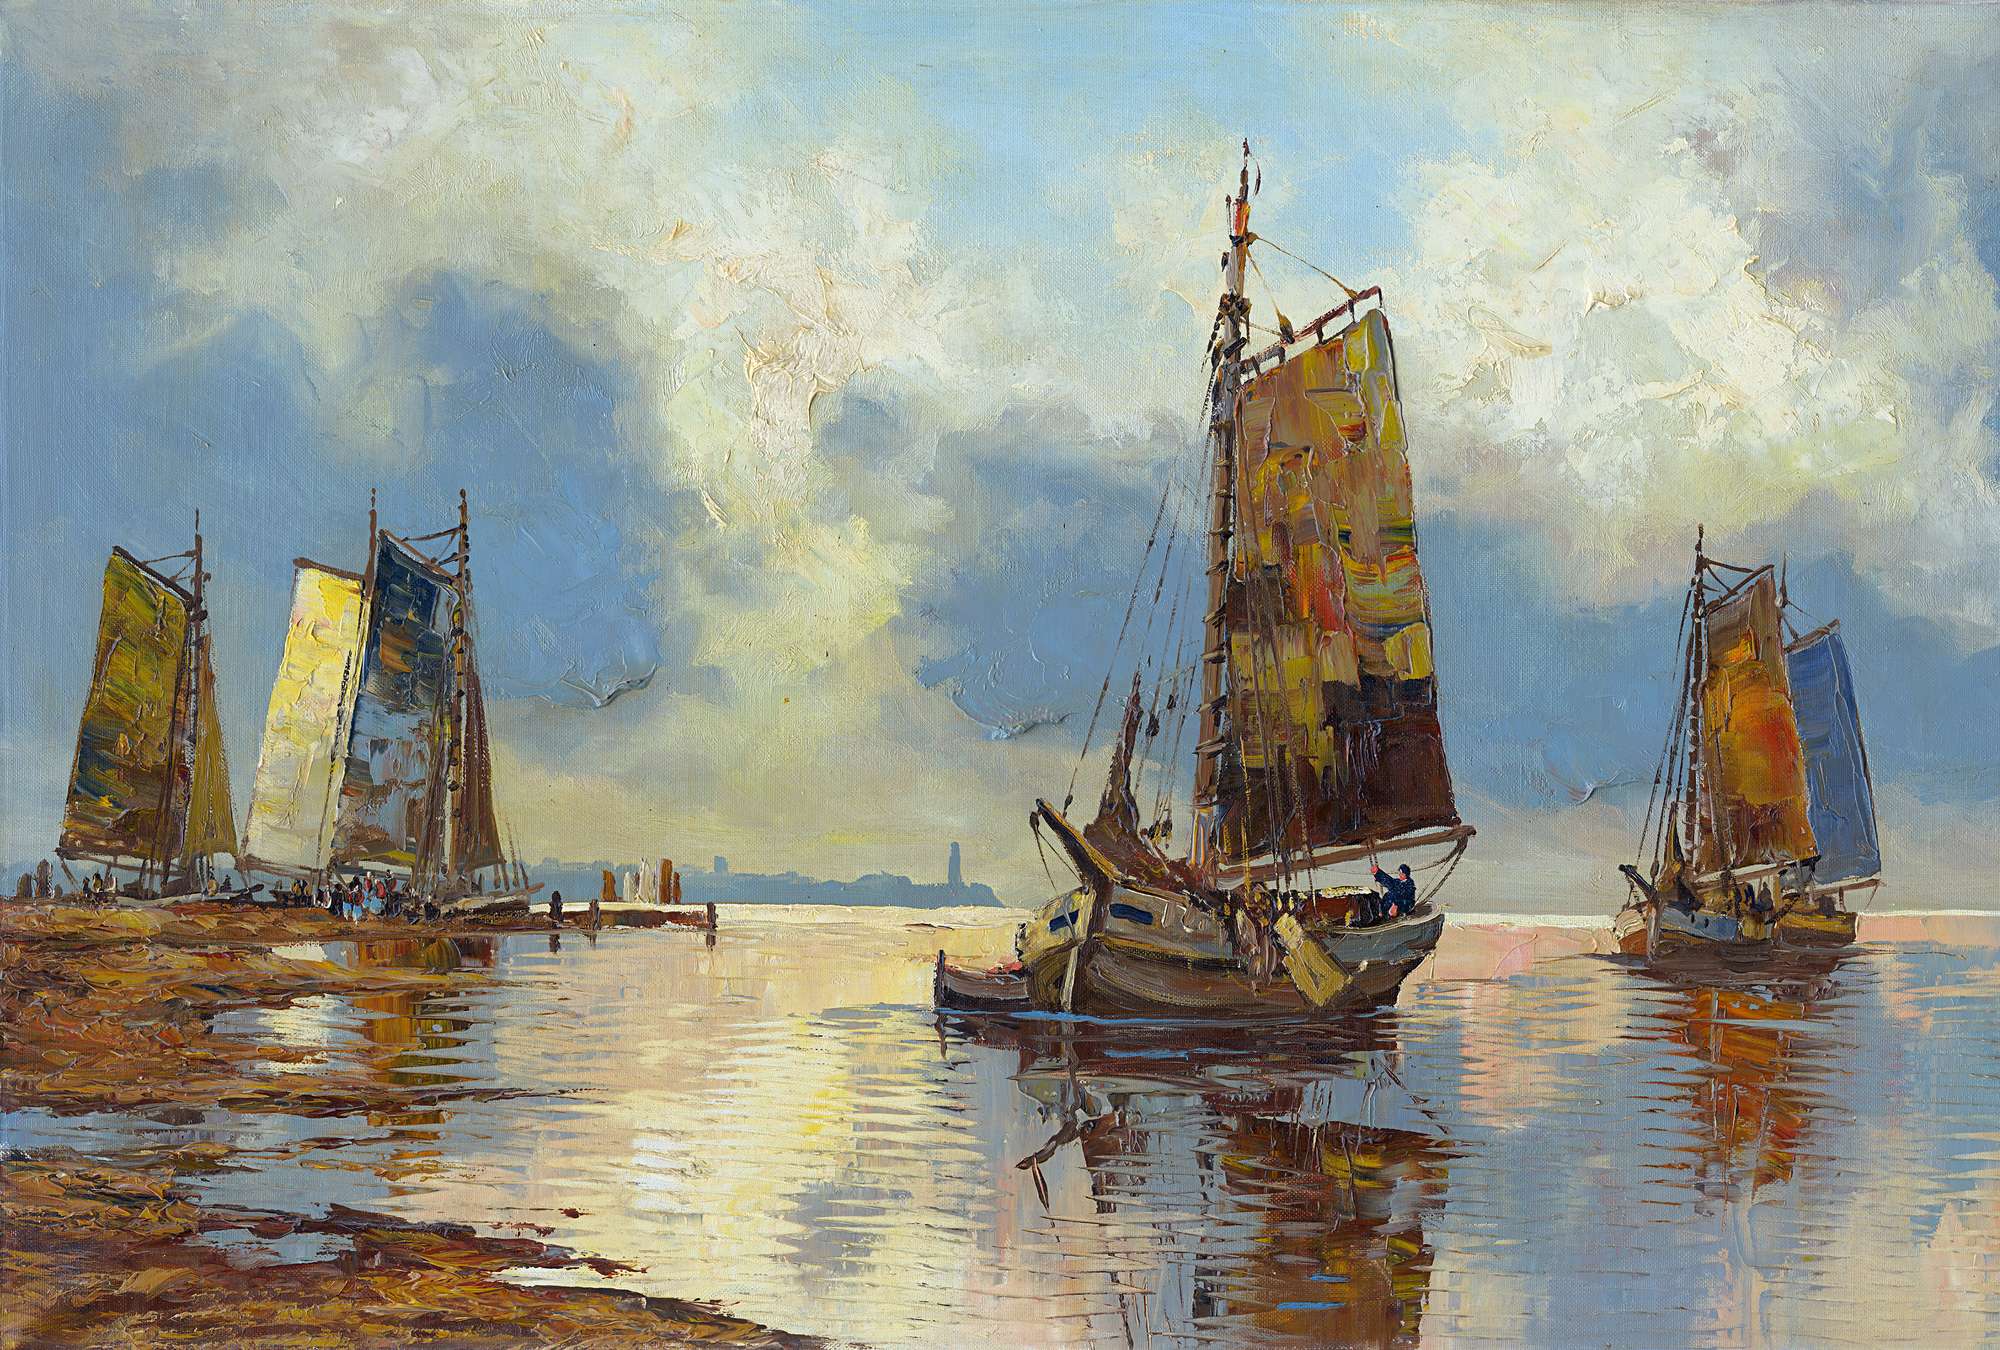             Pittura ad olio con murale storico di navi a vela
        